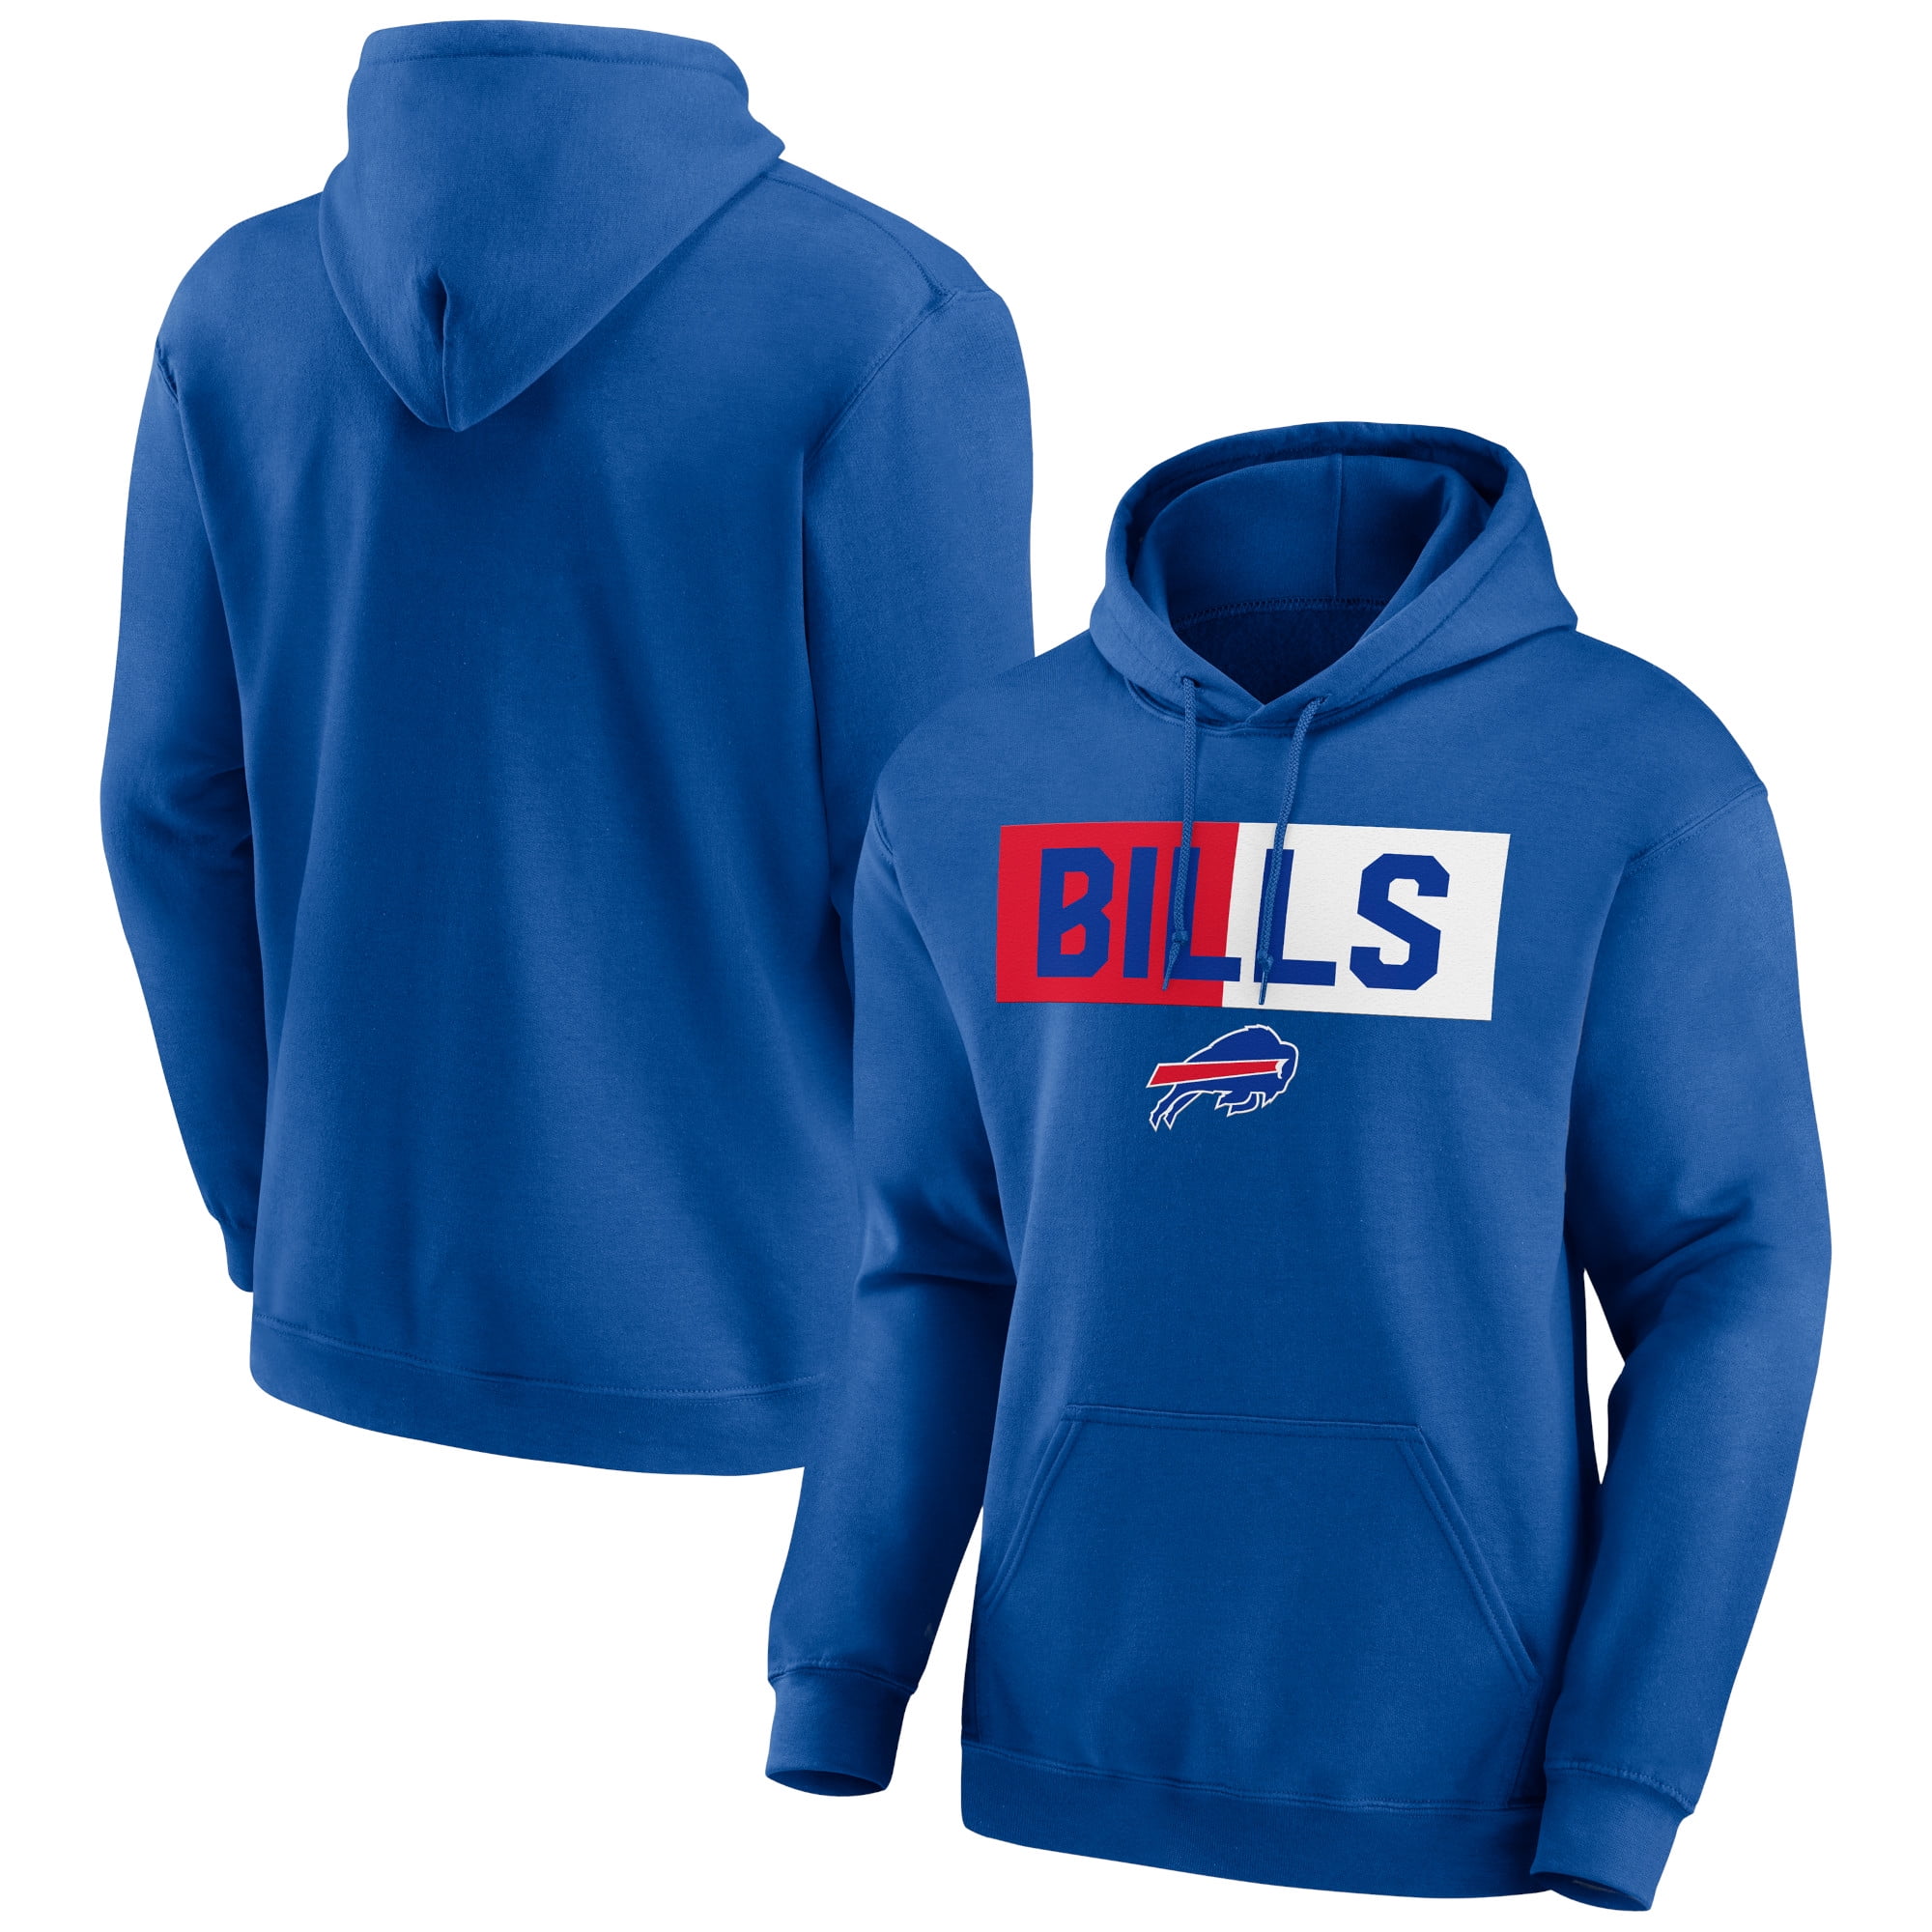 Buffalo Bills Sweatshirts - Walmart.com